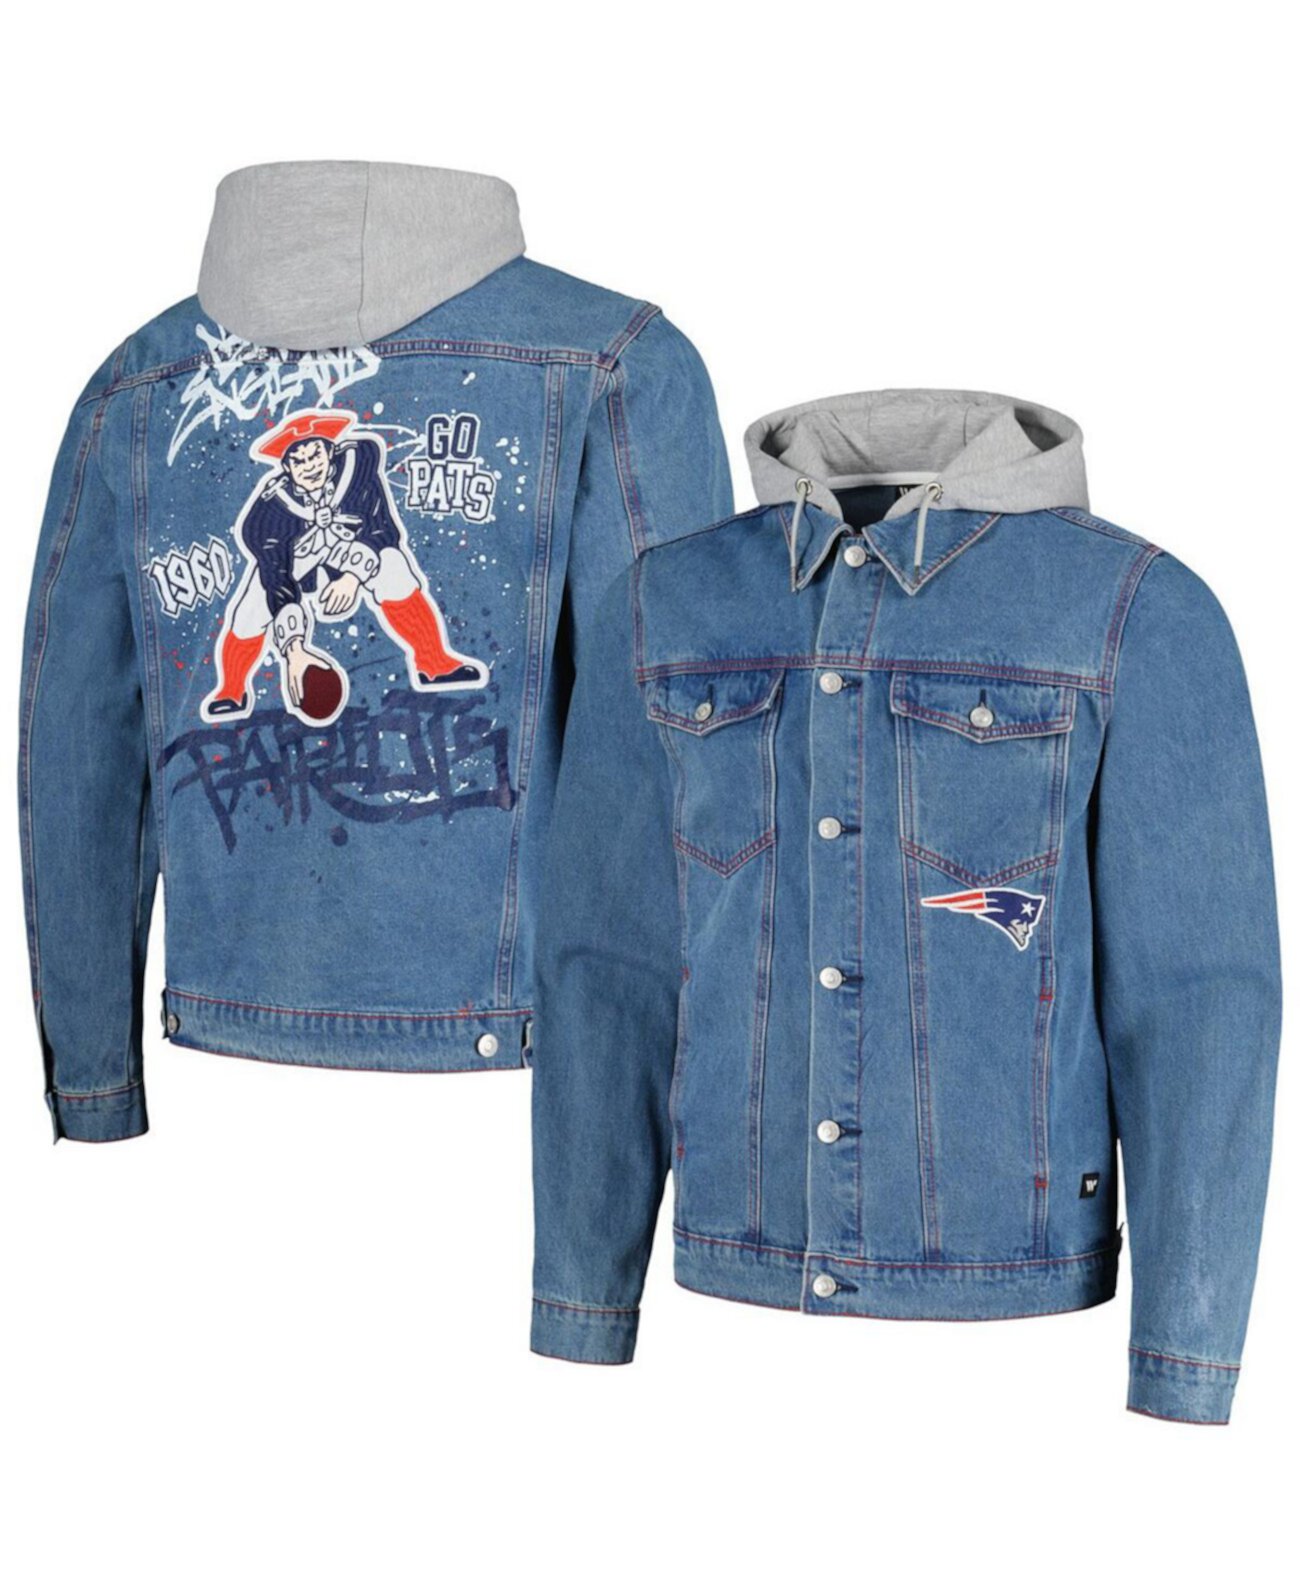 Мужская джинсовая куртка на пуговицах с капюшоном New England Patriots The Wild Collective